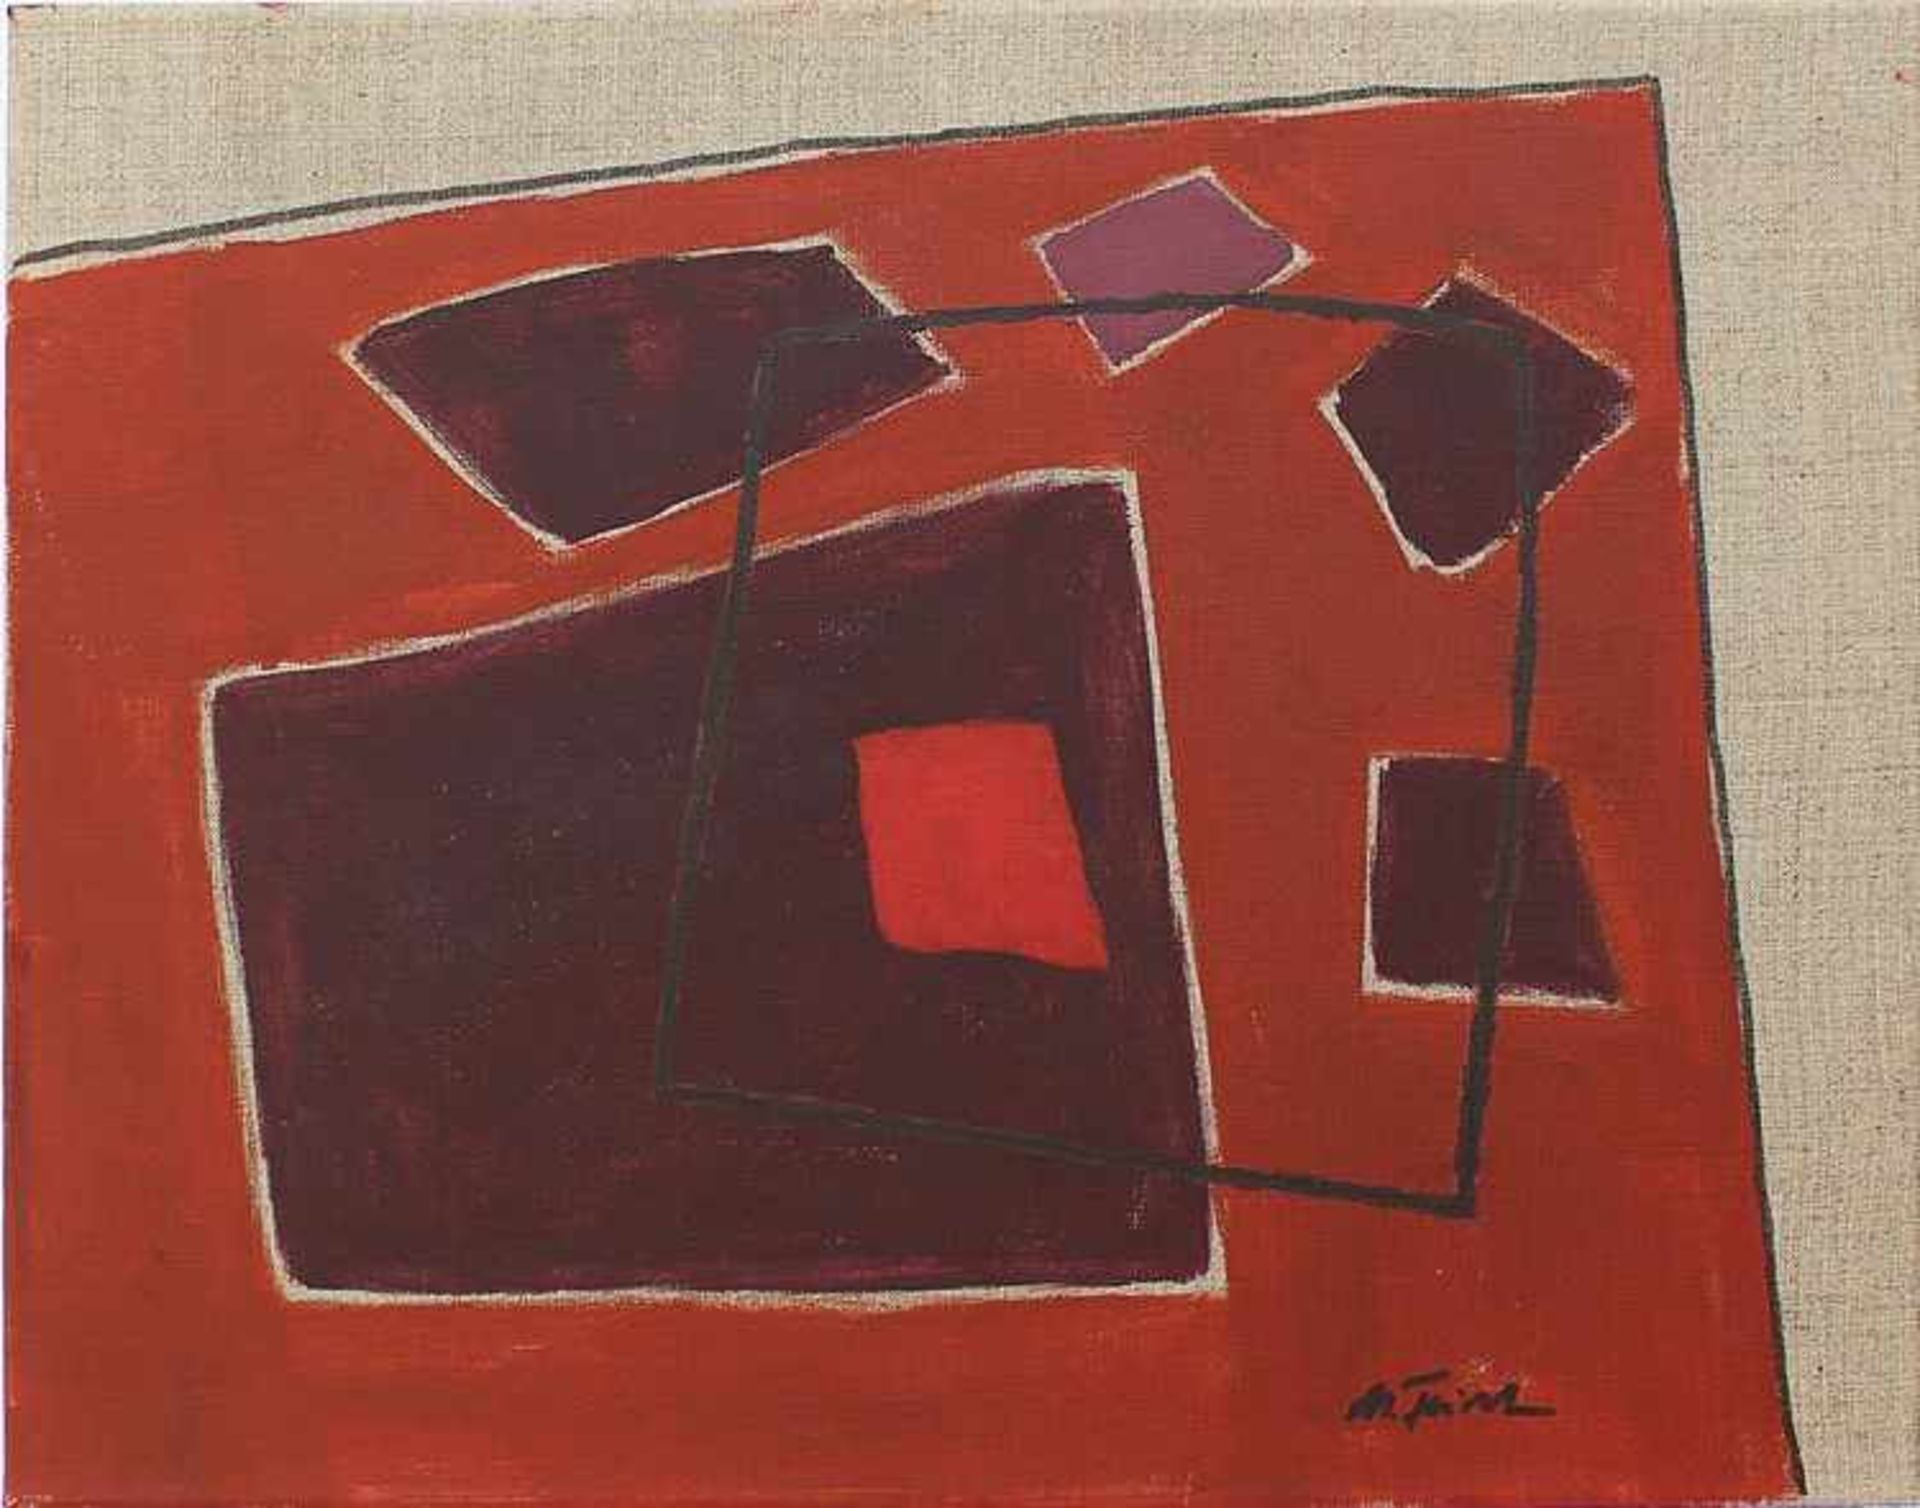 Feicht, Michaelgeb. 1959 Wessling, "Abstrakte Komposition", Öl/Lwd., rot-violette Farbpalette,